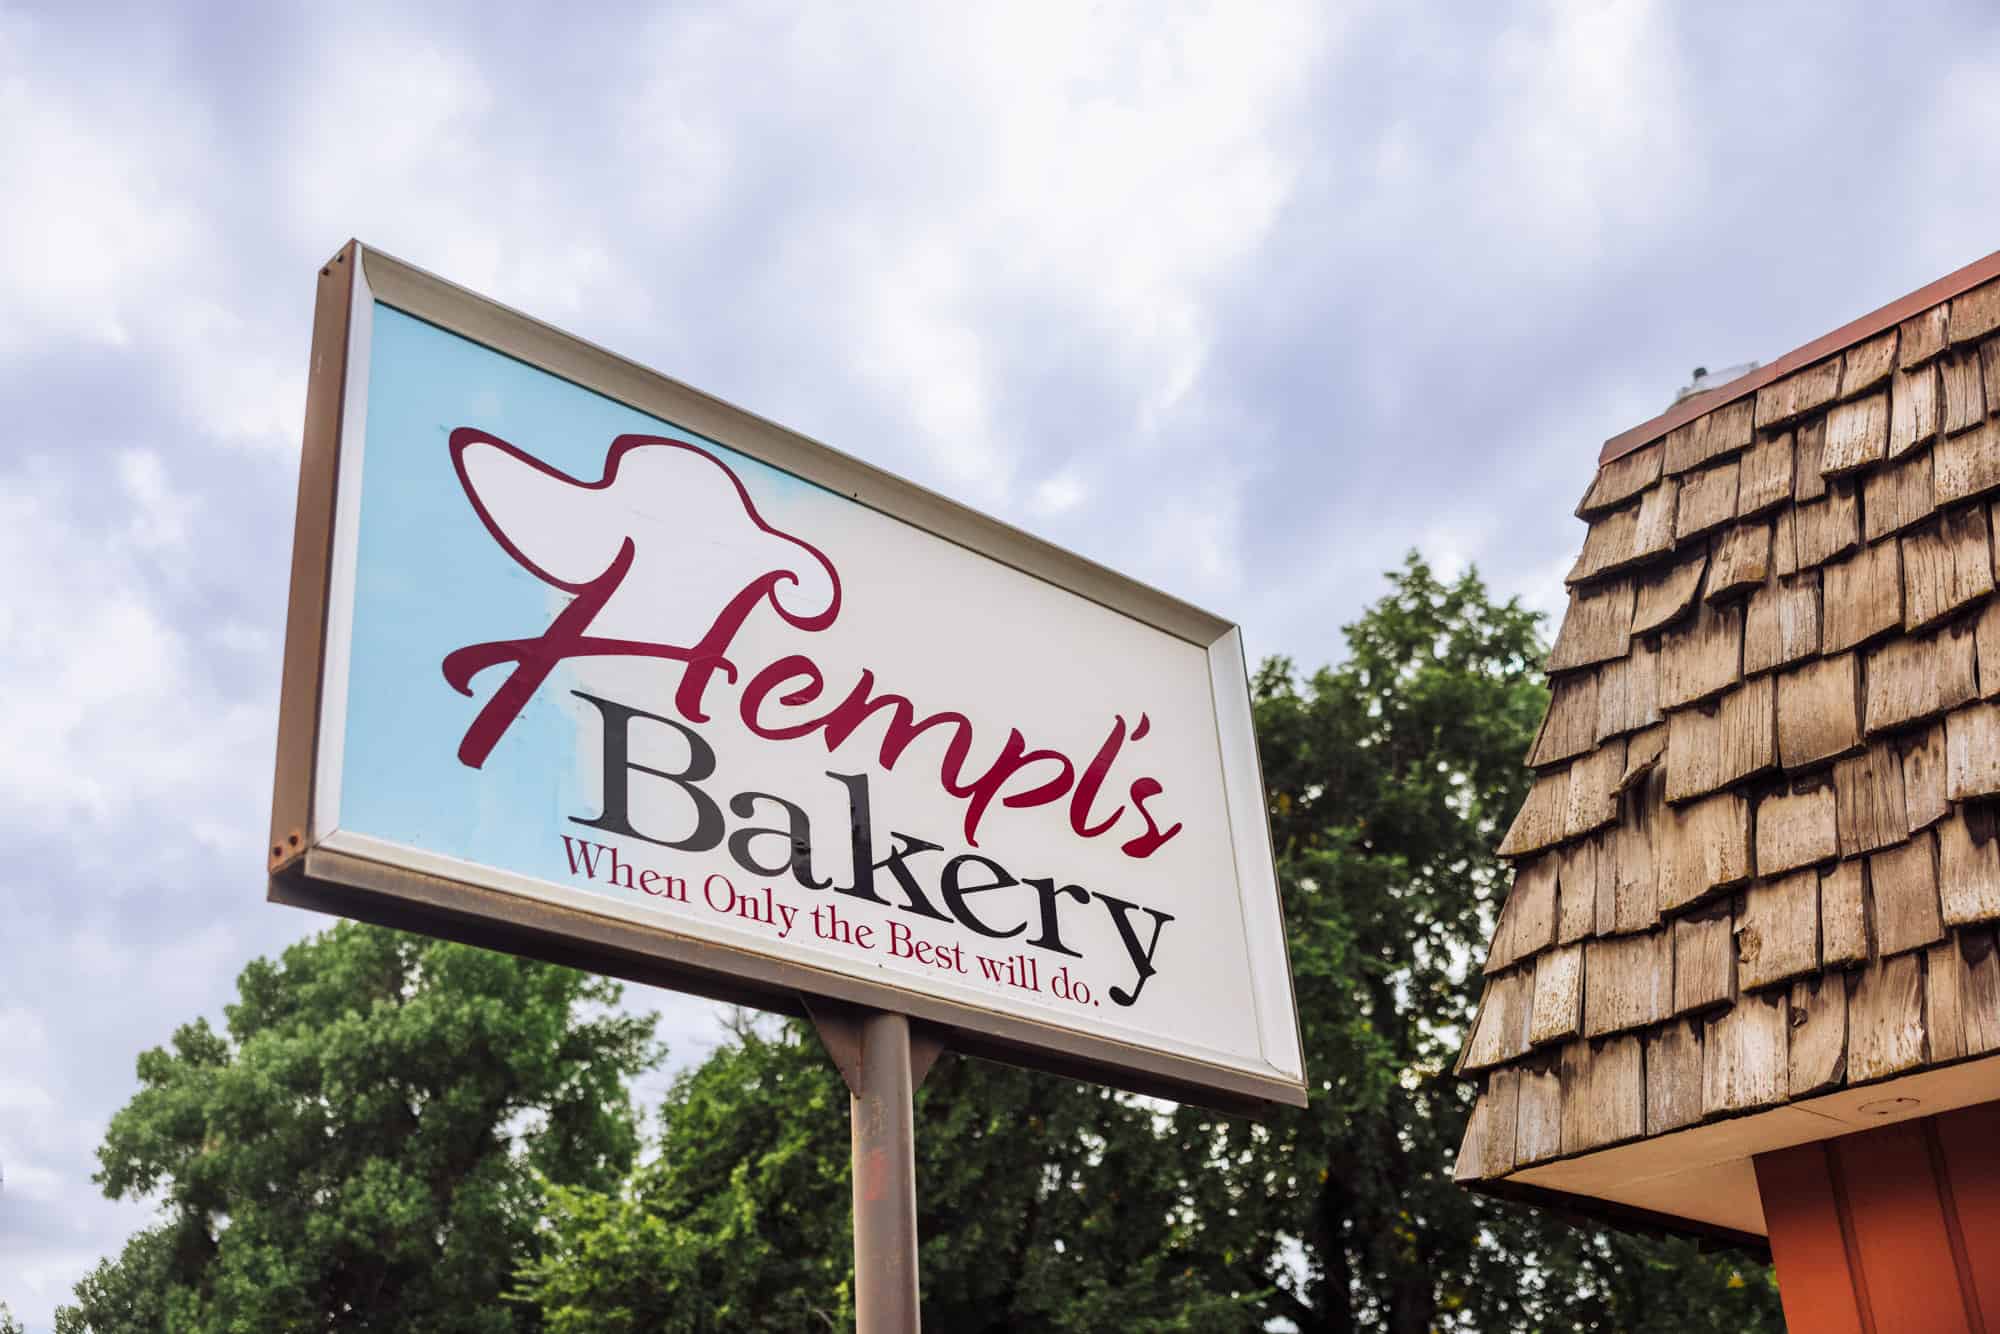 Hempl's Bakery in Great Falls